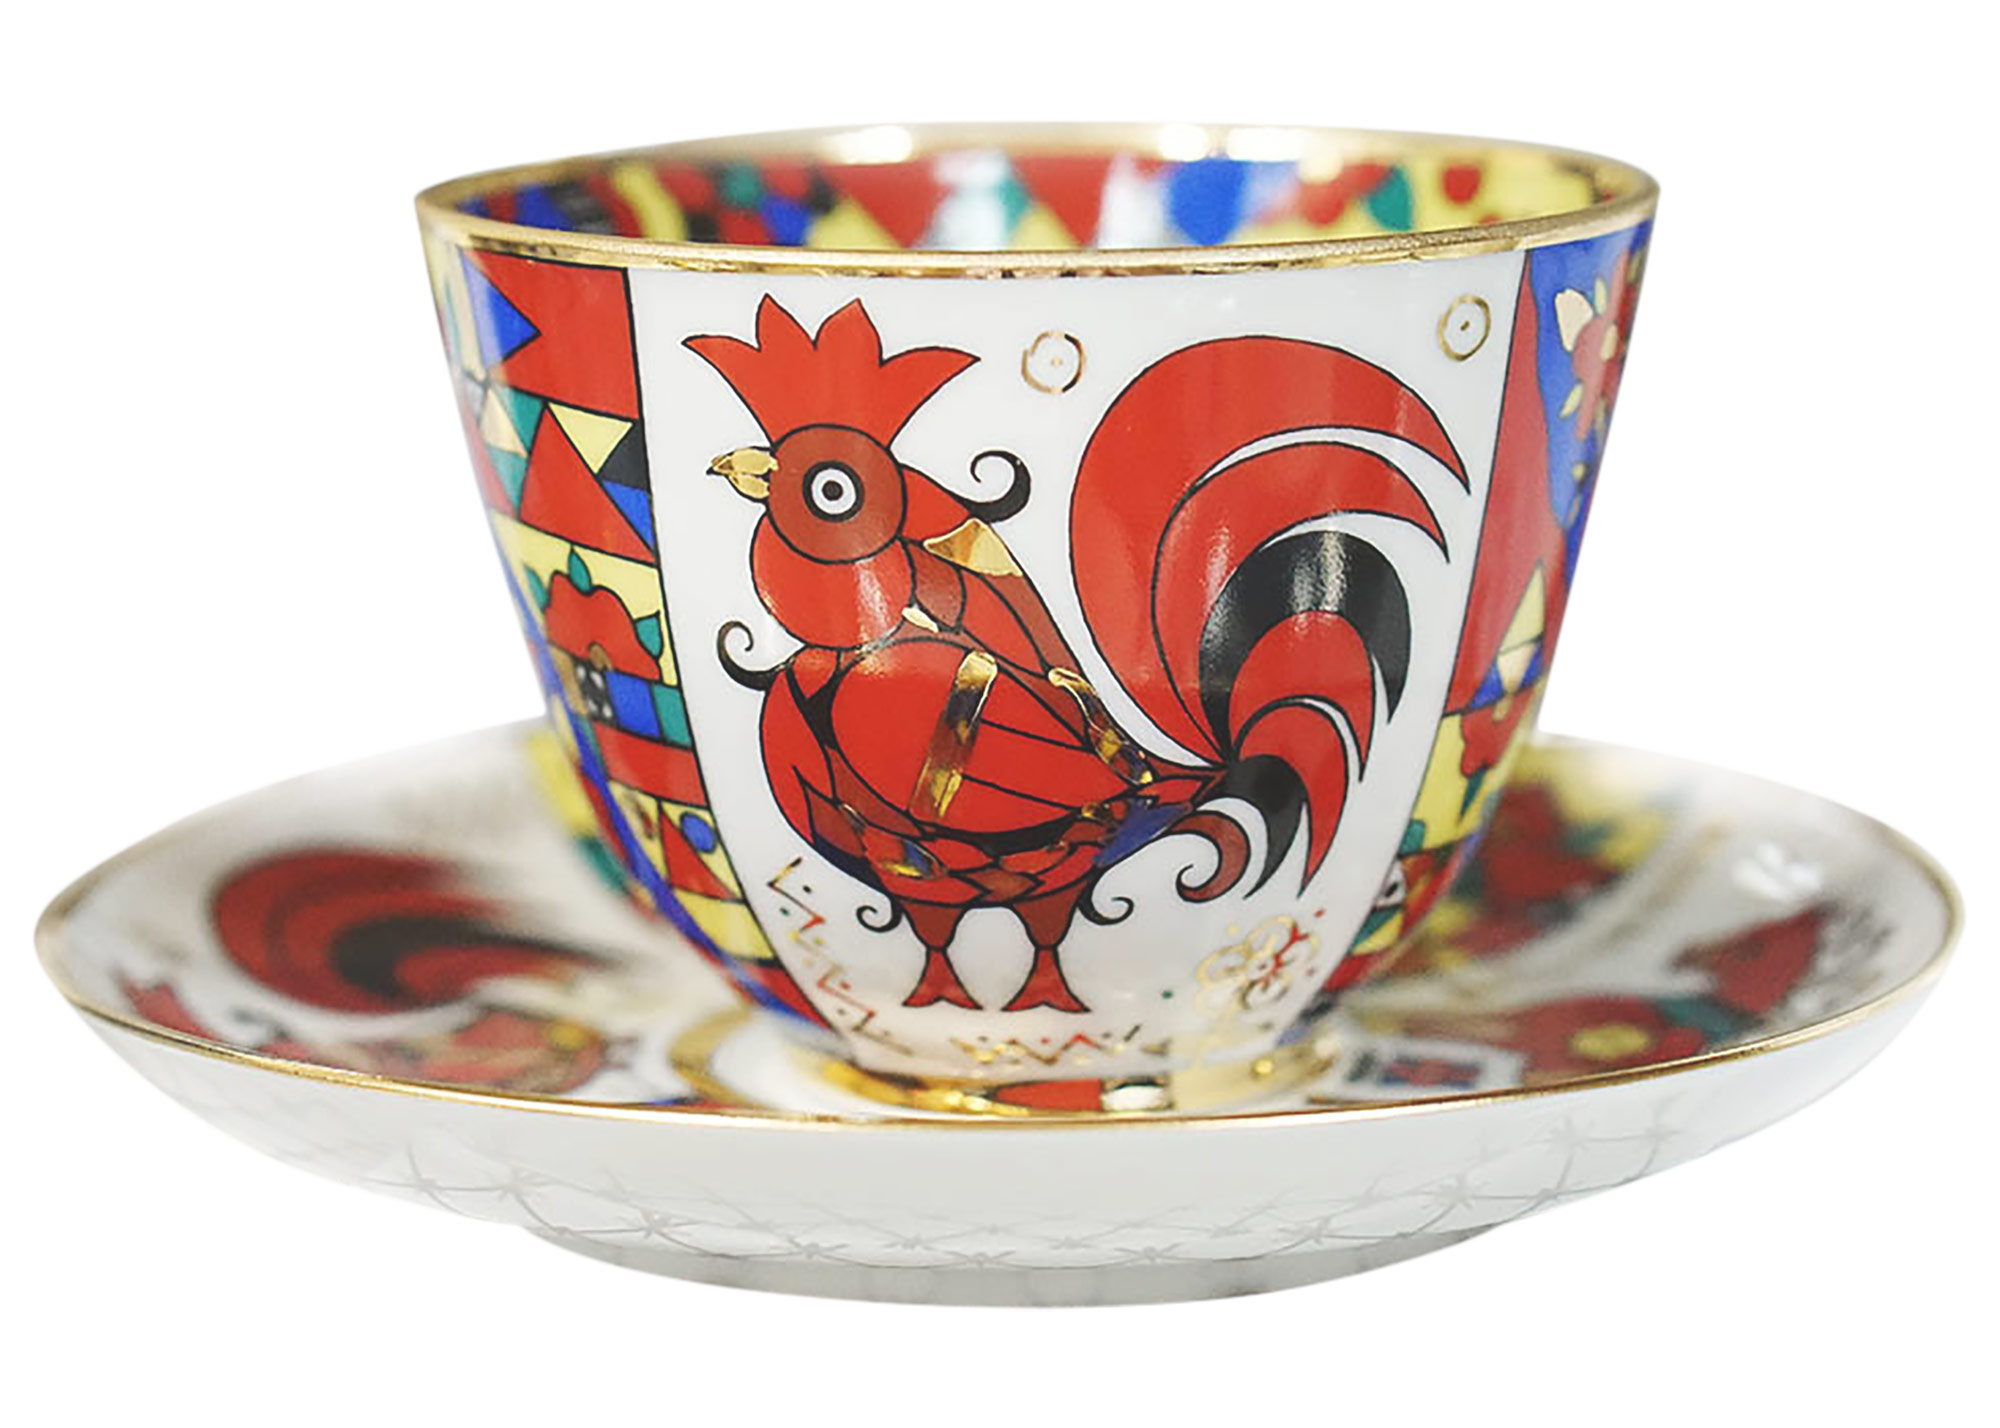 Buy Folk Motifs Tea Cup and Saucer at GoldenCockerel.com